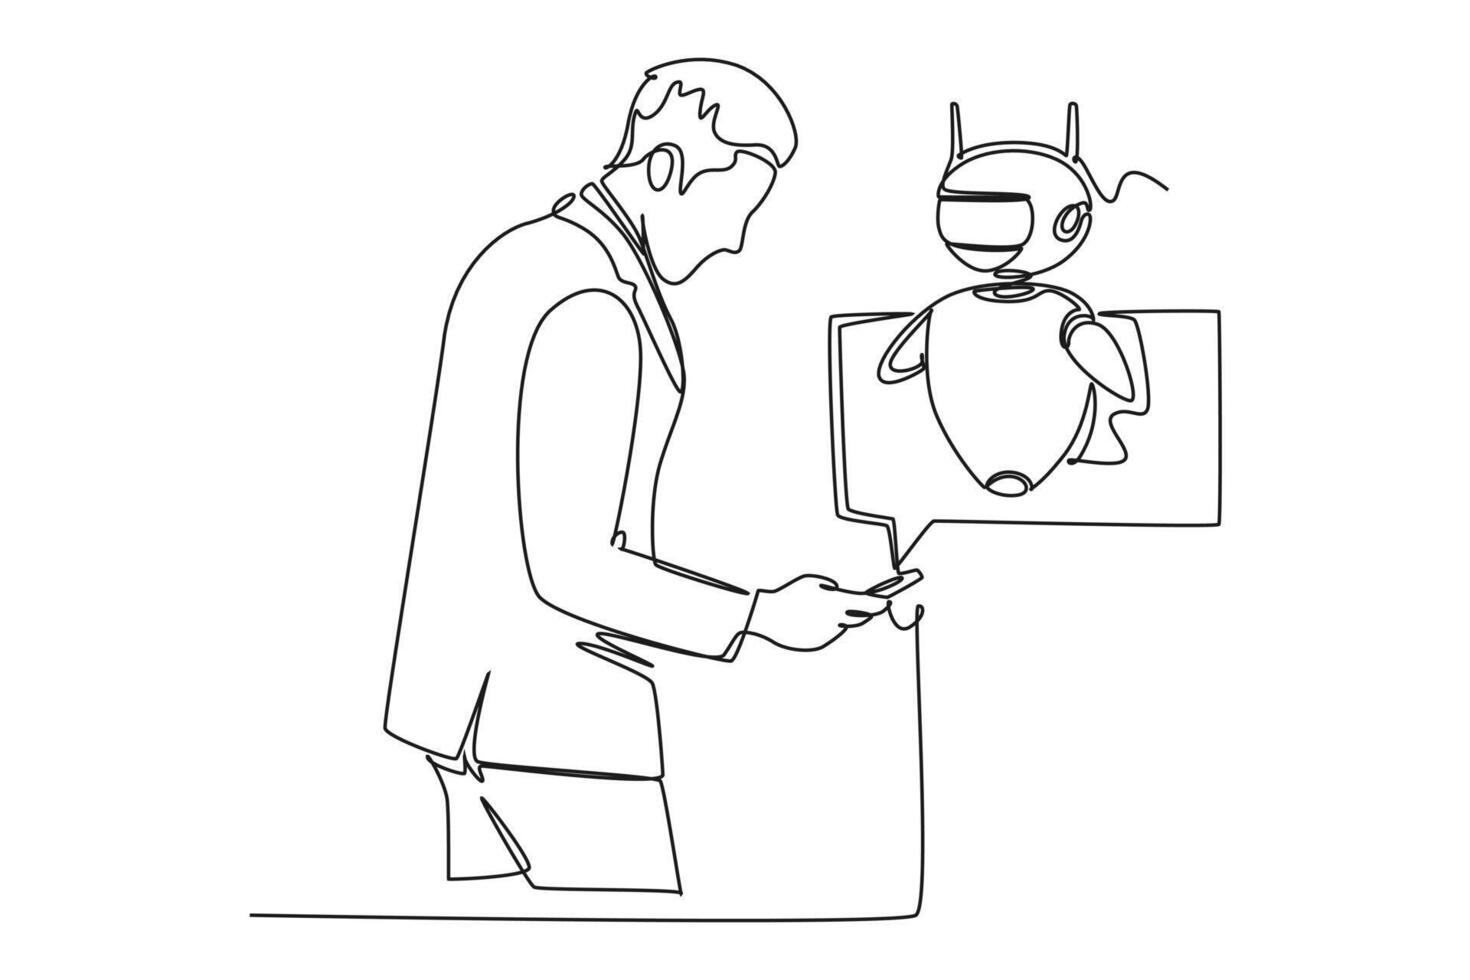 contínuo 1 linha desenhando conectados comunicação com bate-papo robô conceito. rabisco ilustração. vetor